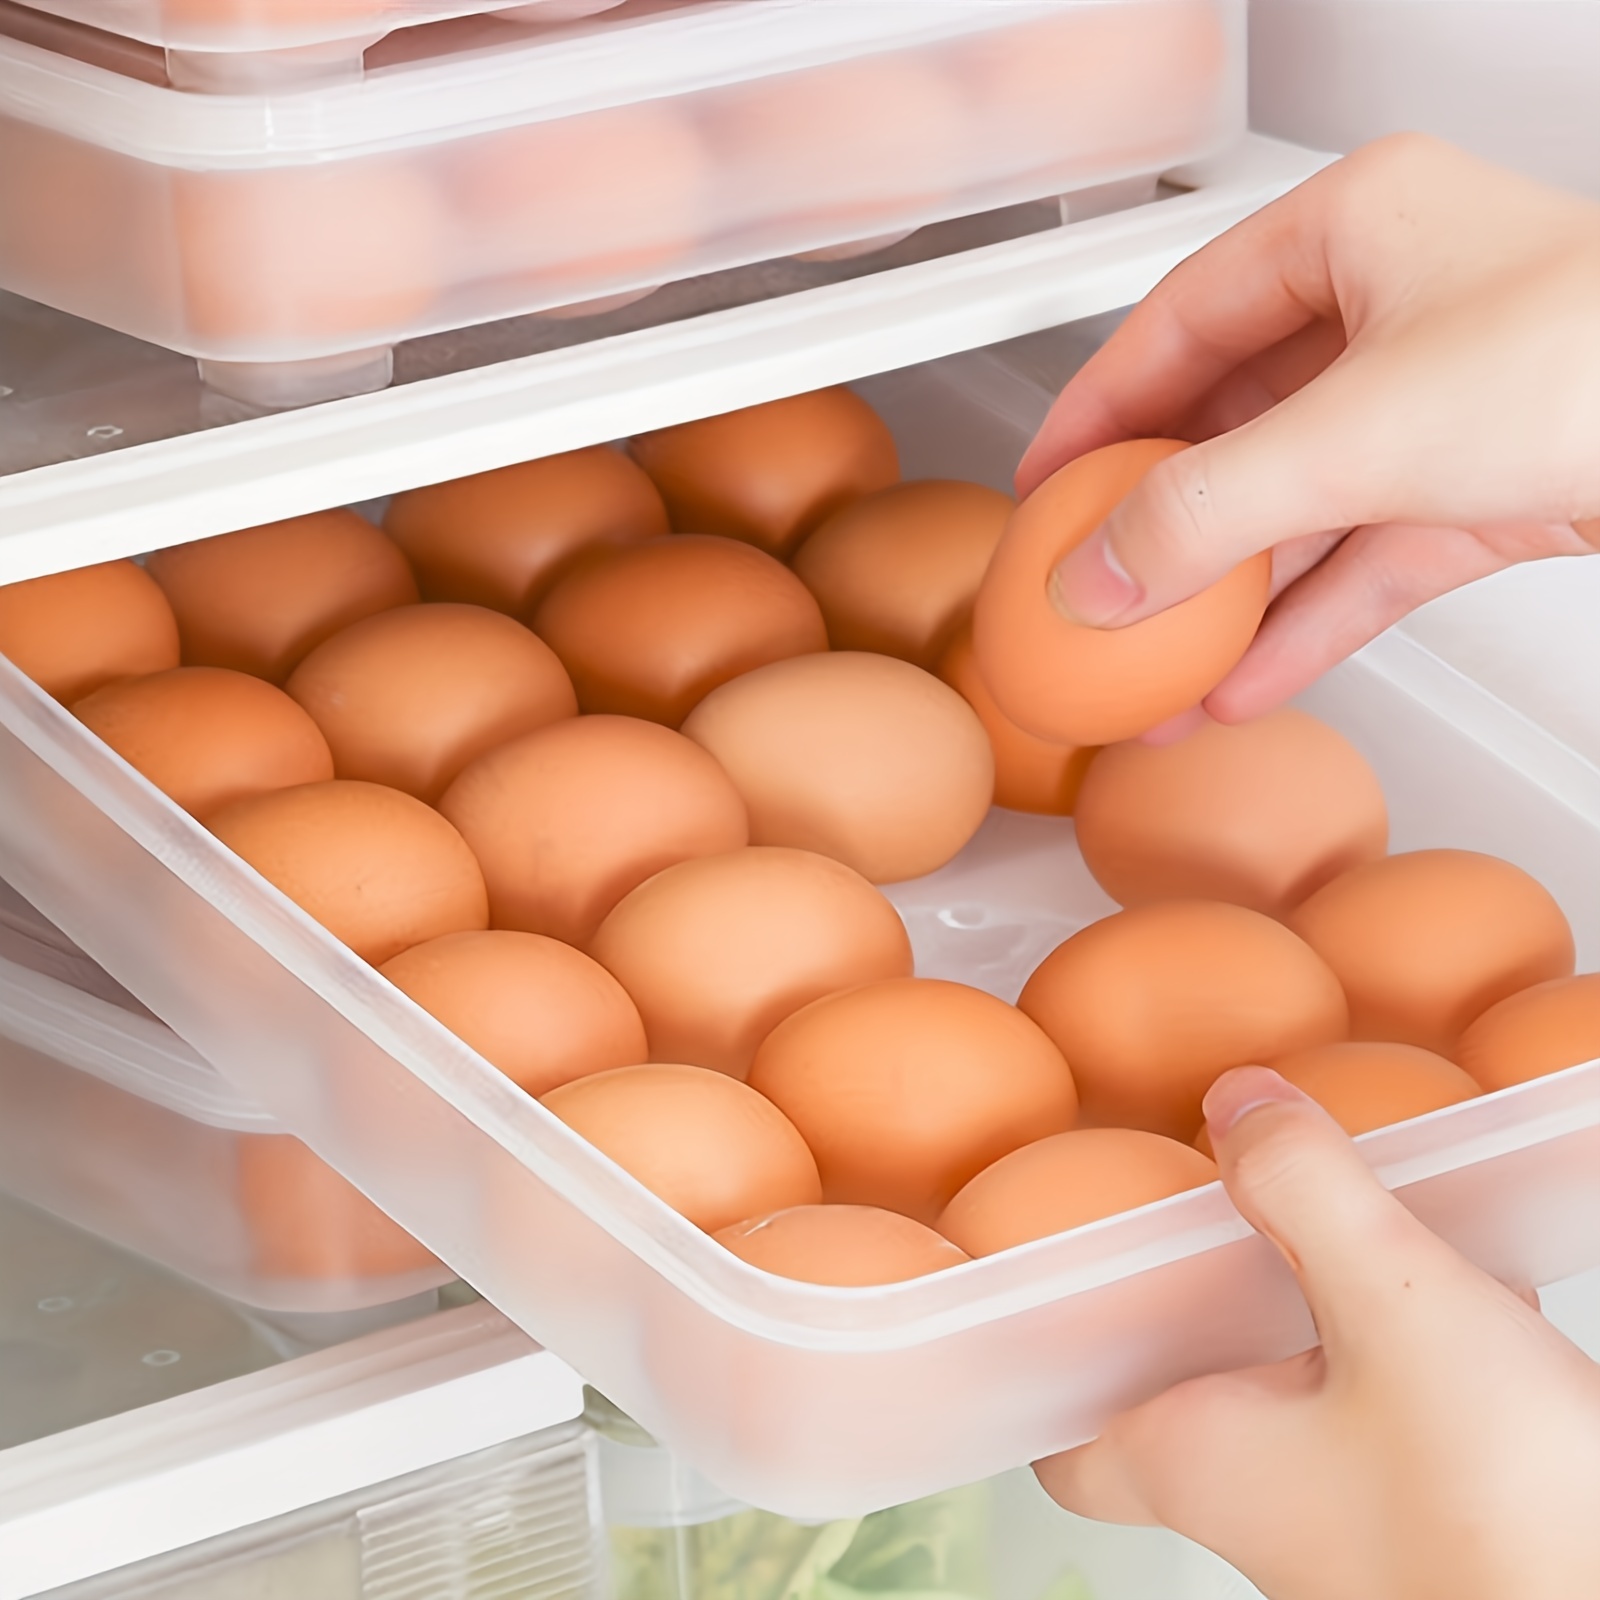 Egg Holder for Refrigerator - Deviled Egg Tray